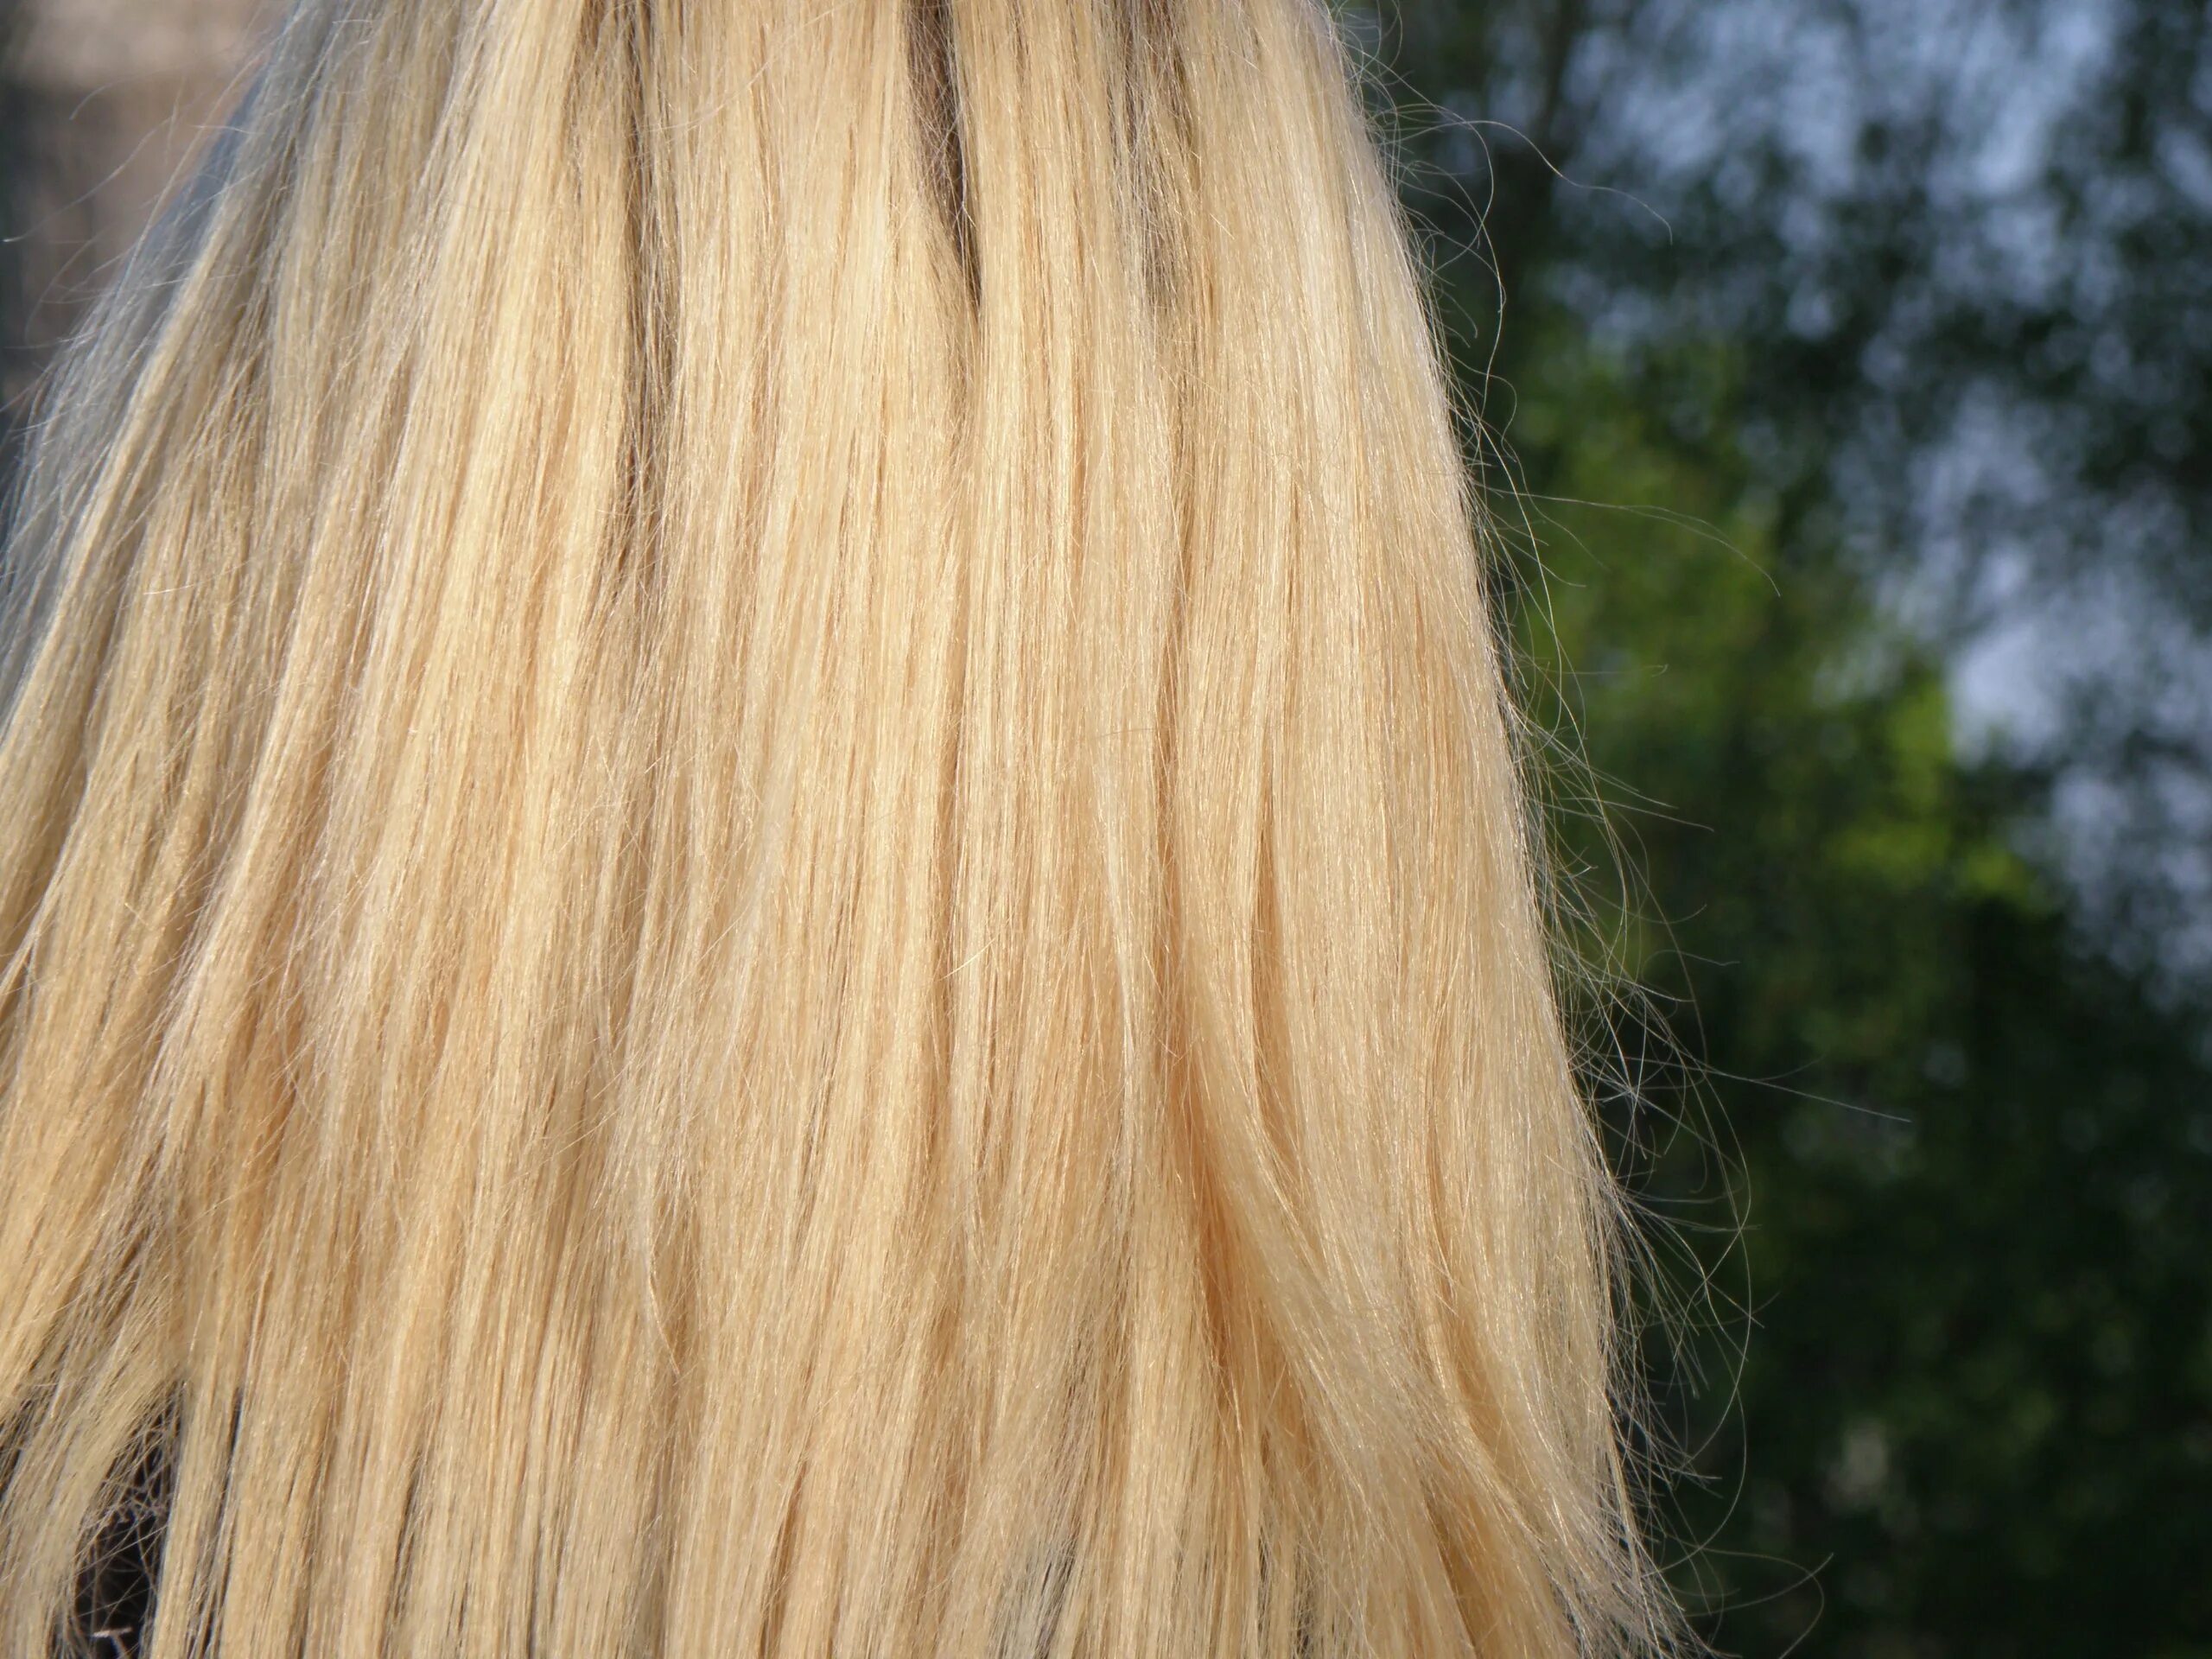 Blonde brown. Очень светло коричневые волосы. Текстура волос блонд. Волосы блонд сожженные текстур. Вместо блонда волосы похожи на сено.